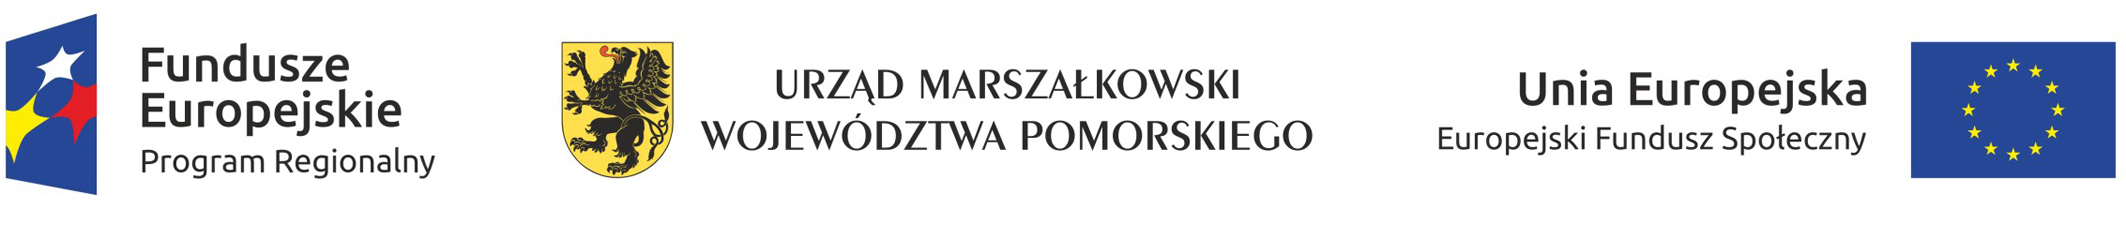 UE Fundusze Urząd Marszałkowski